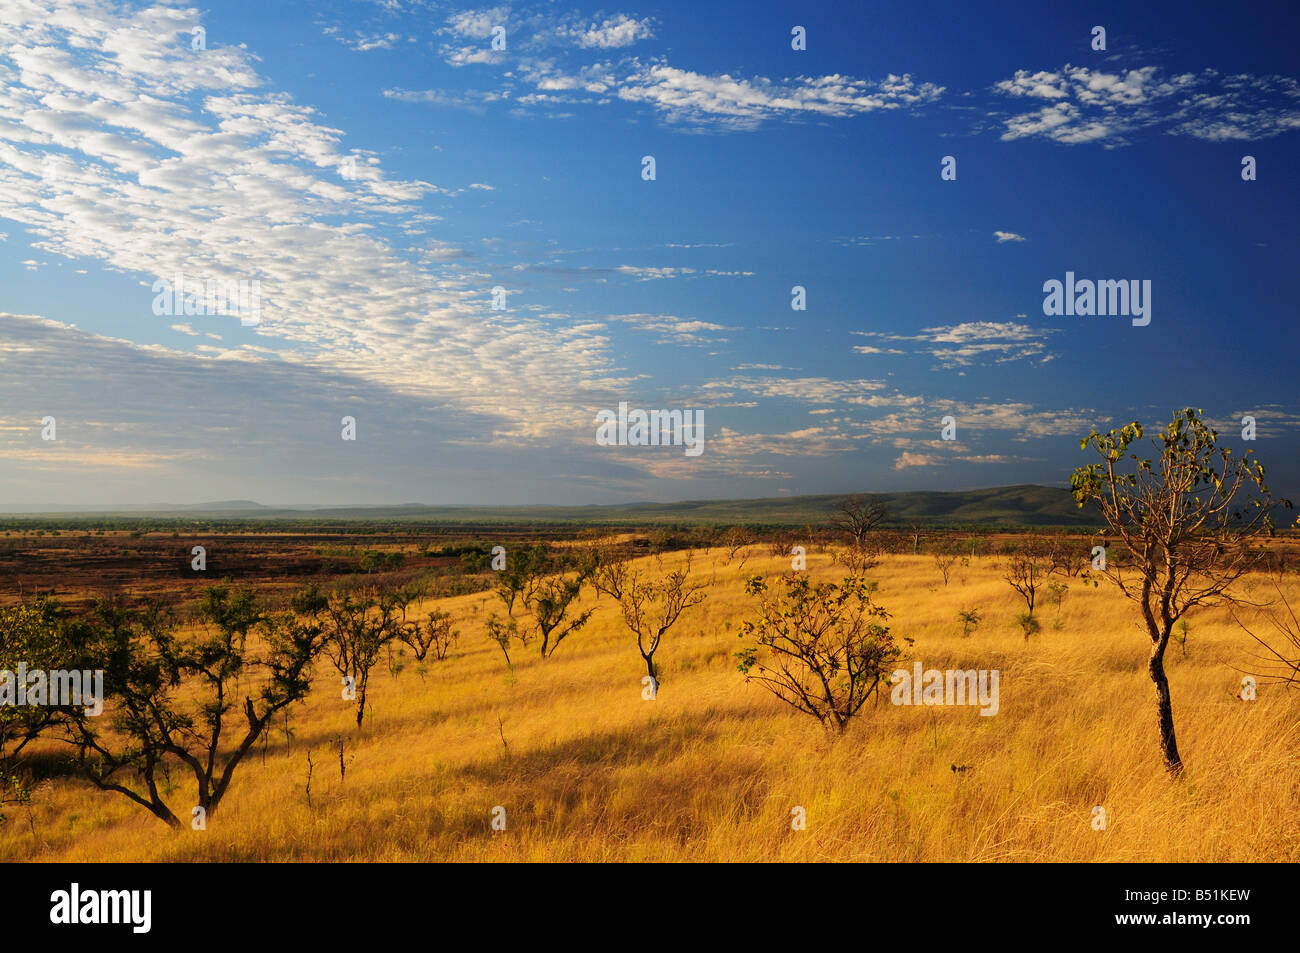 Scenery near Wyndham, Kimberley, Western Australia, Australia Stock Photo